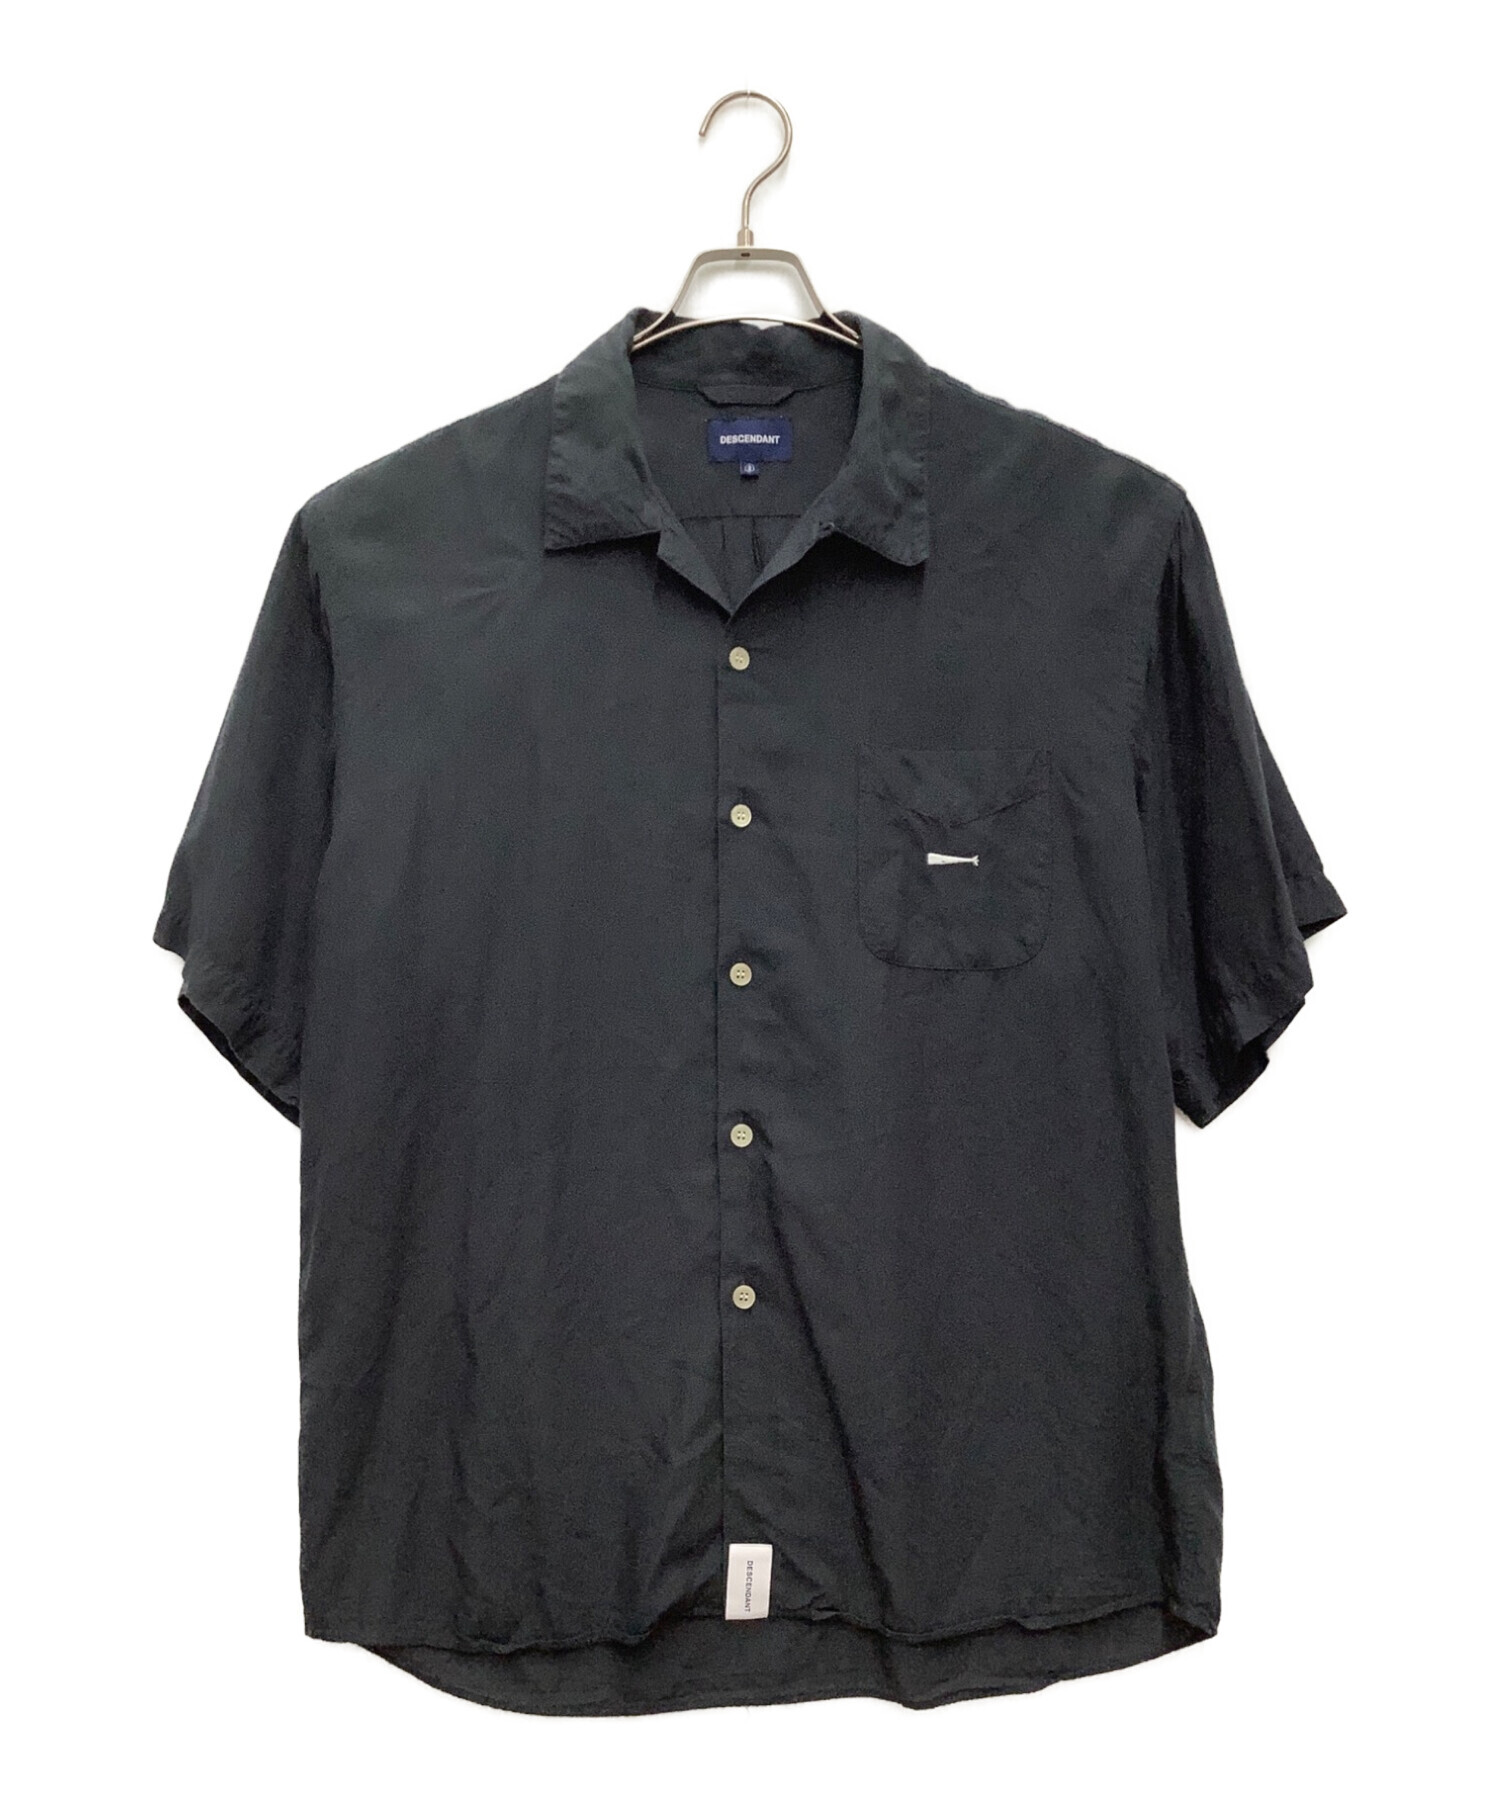 DESCENDANT (ディセンダント) オープンカラー半袖シャツ ネイビー サイズ:M